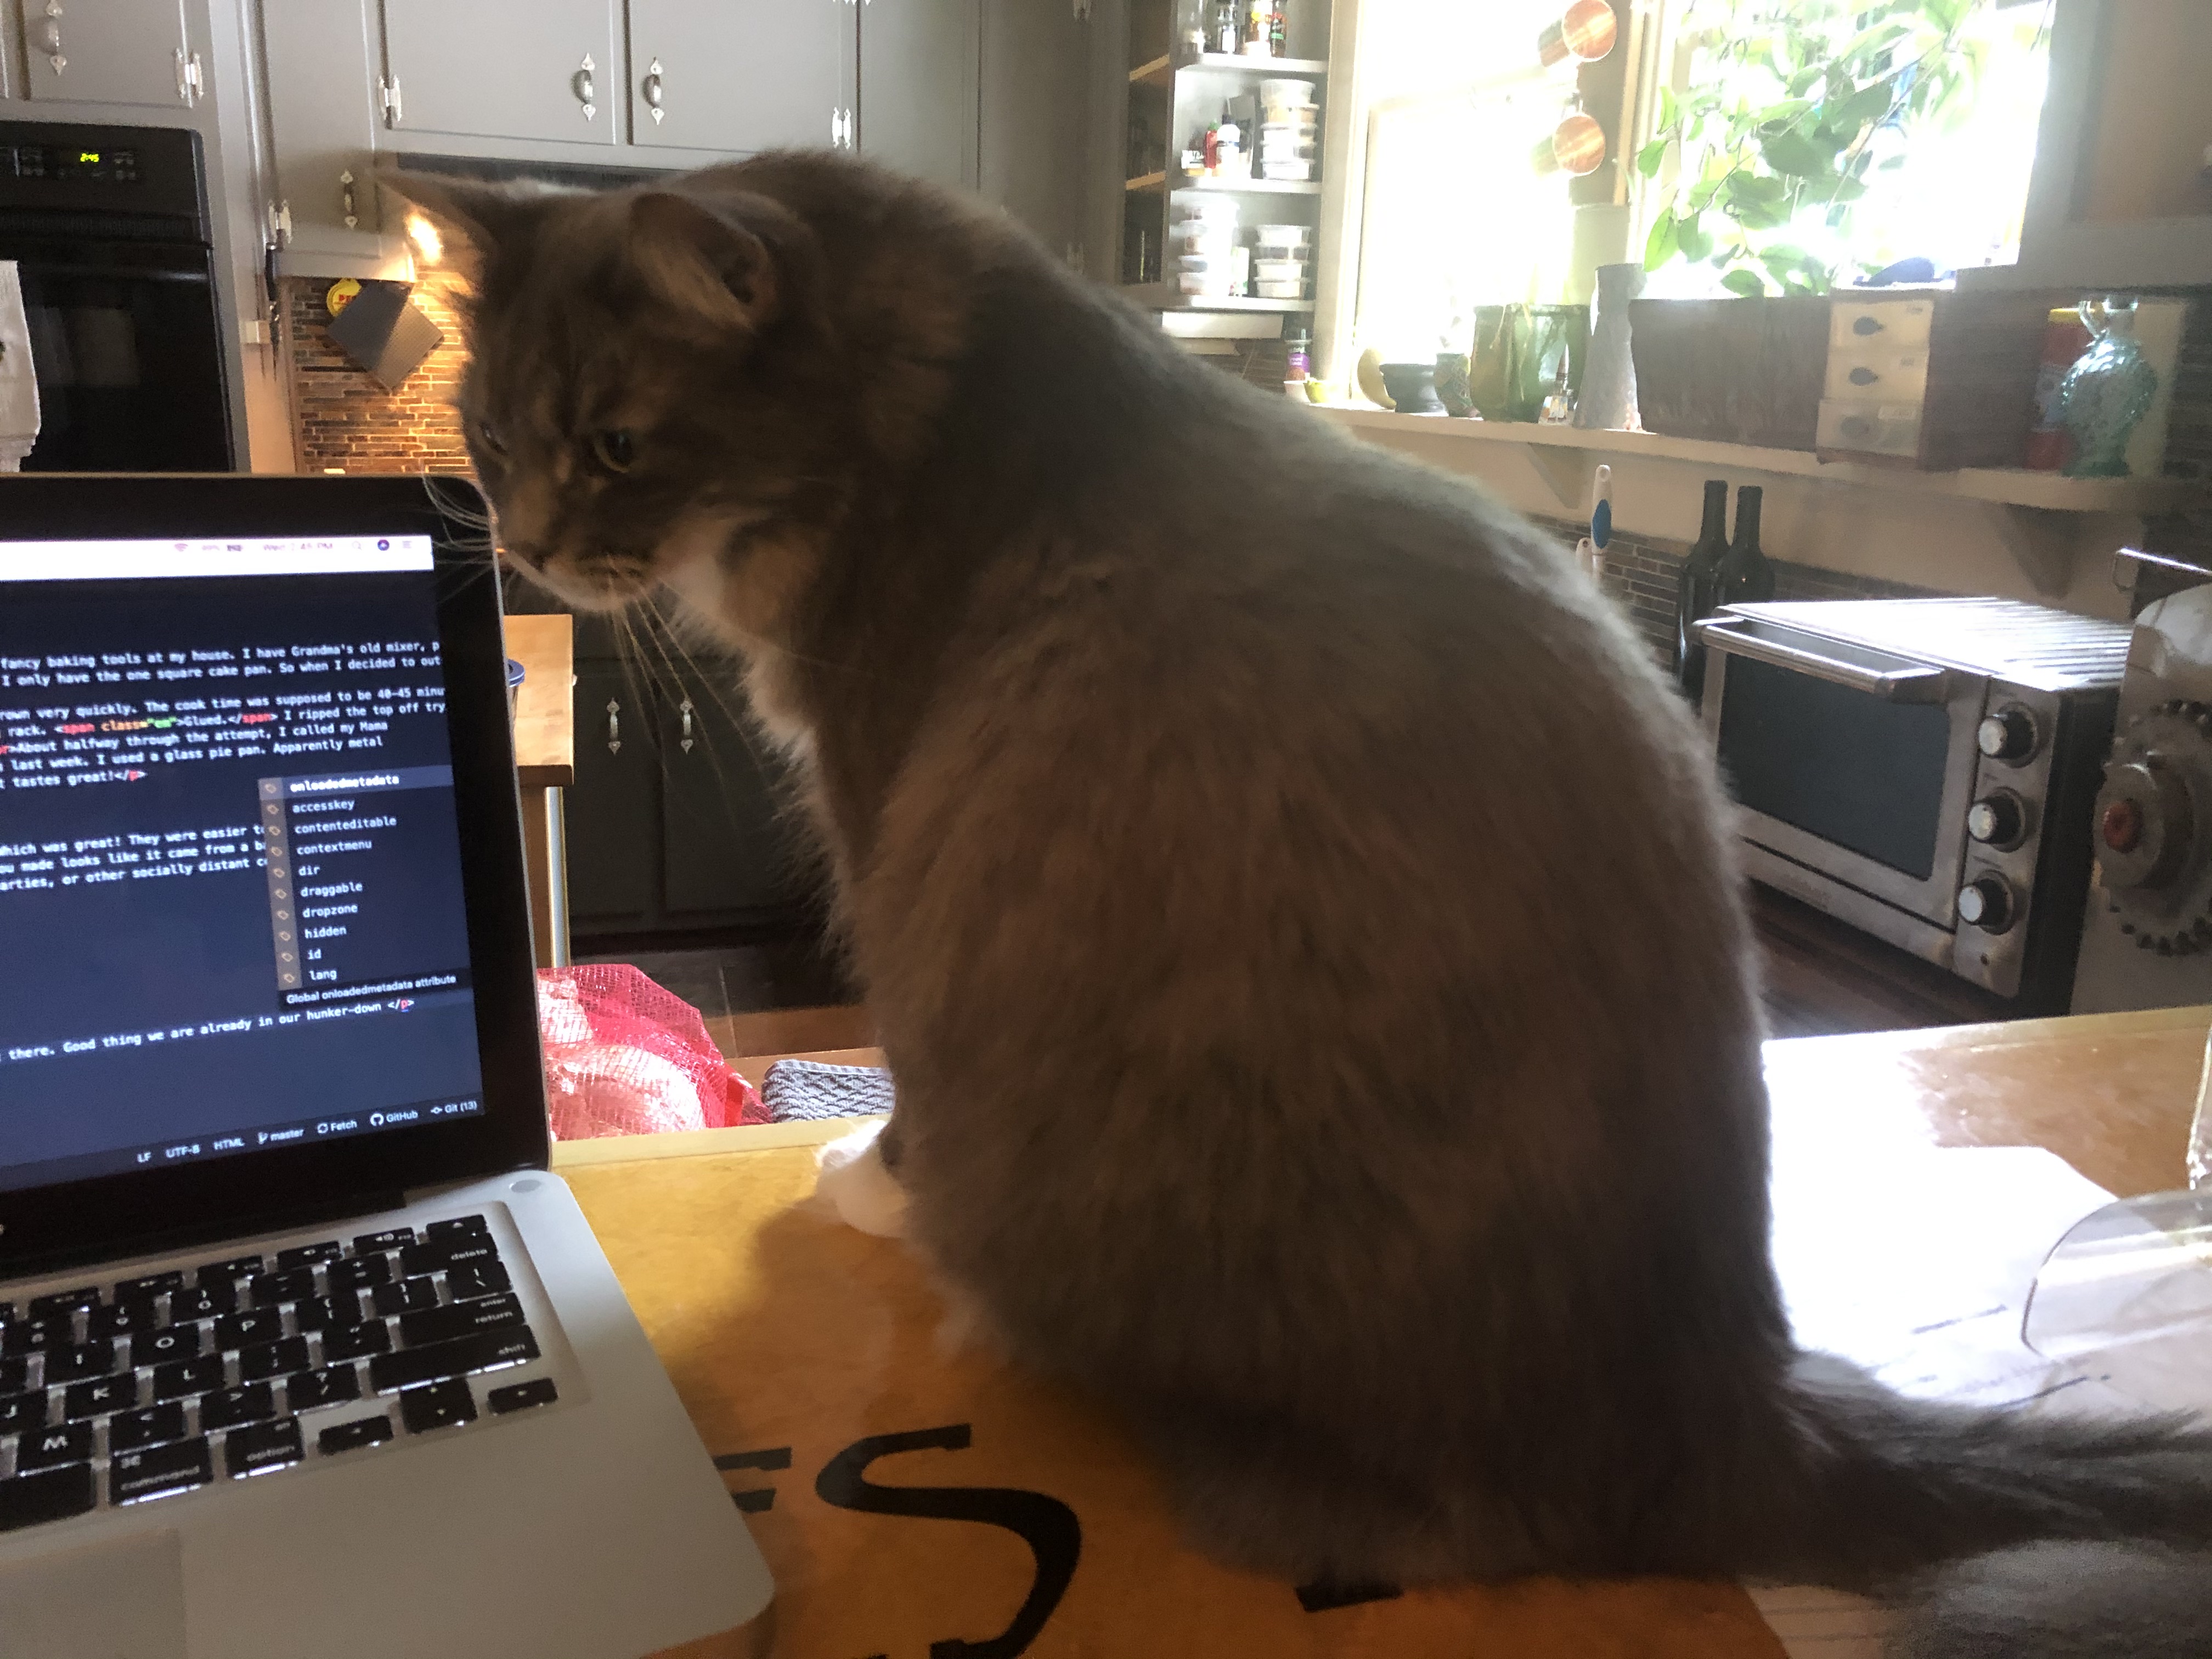 Cat named Analog sitting next to laptop